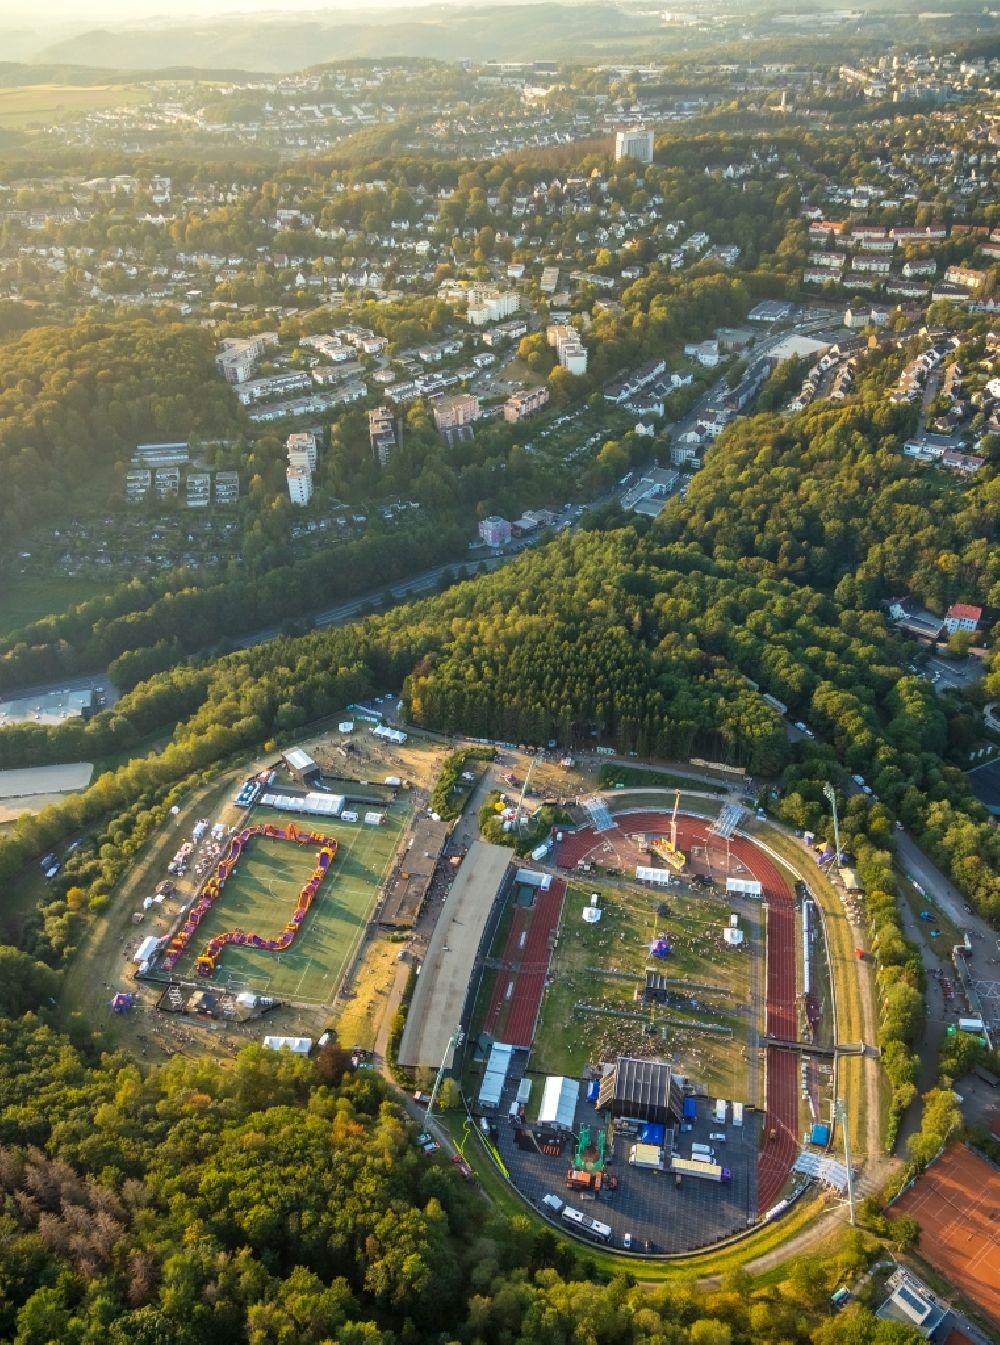 Lüdenscheid von oben - Bautz Festival auf dem Sportstätten-Gelände des Stadion Nattenberg-Stadion in Lüdenscheid im Bundesland Nordrhein-Westfalen, Deutschland